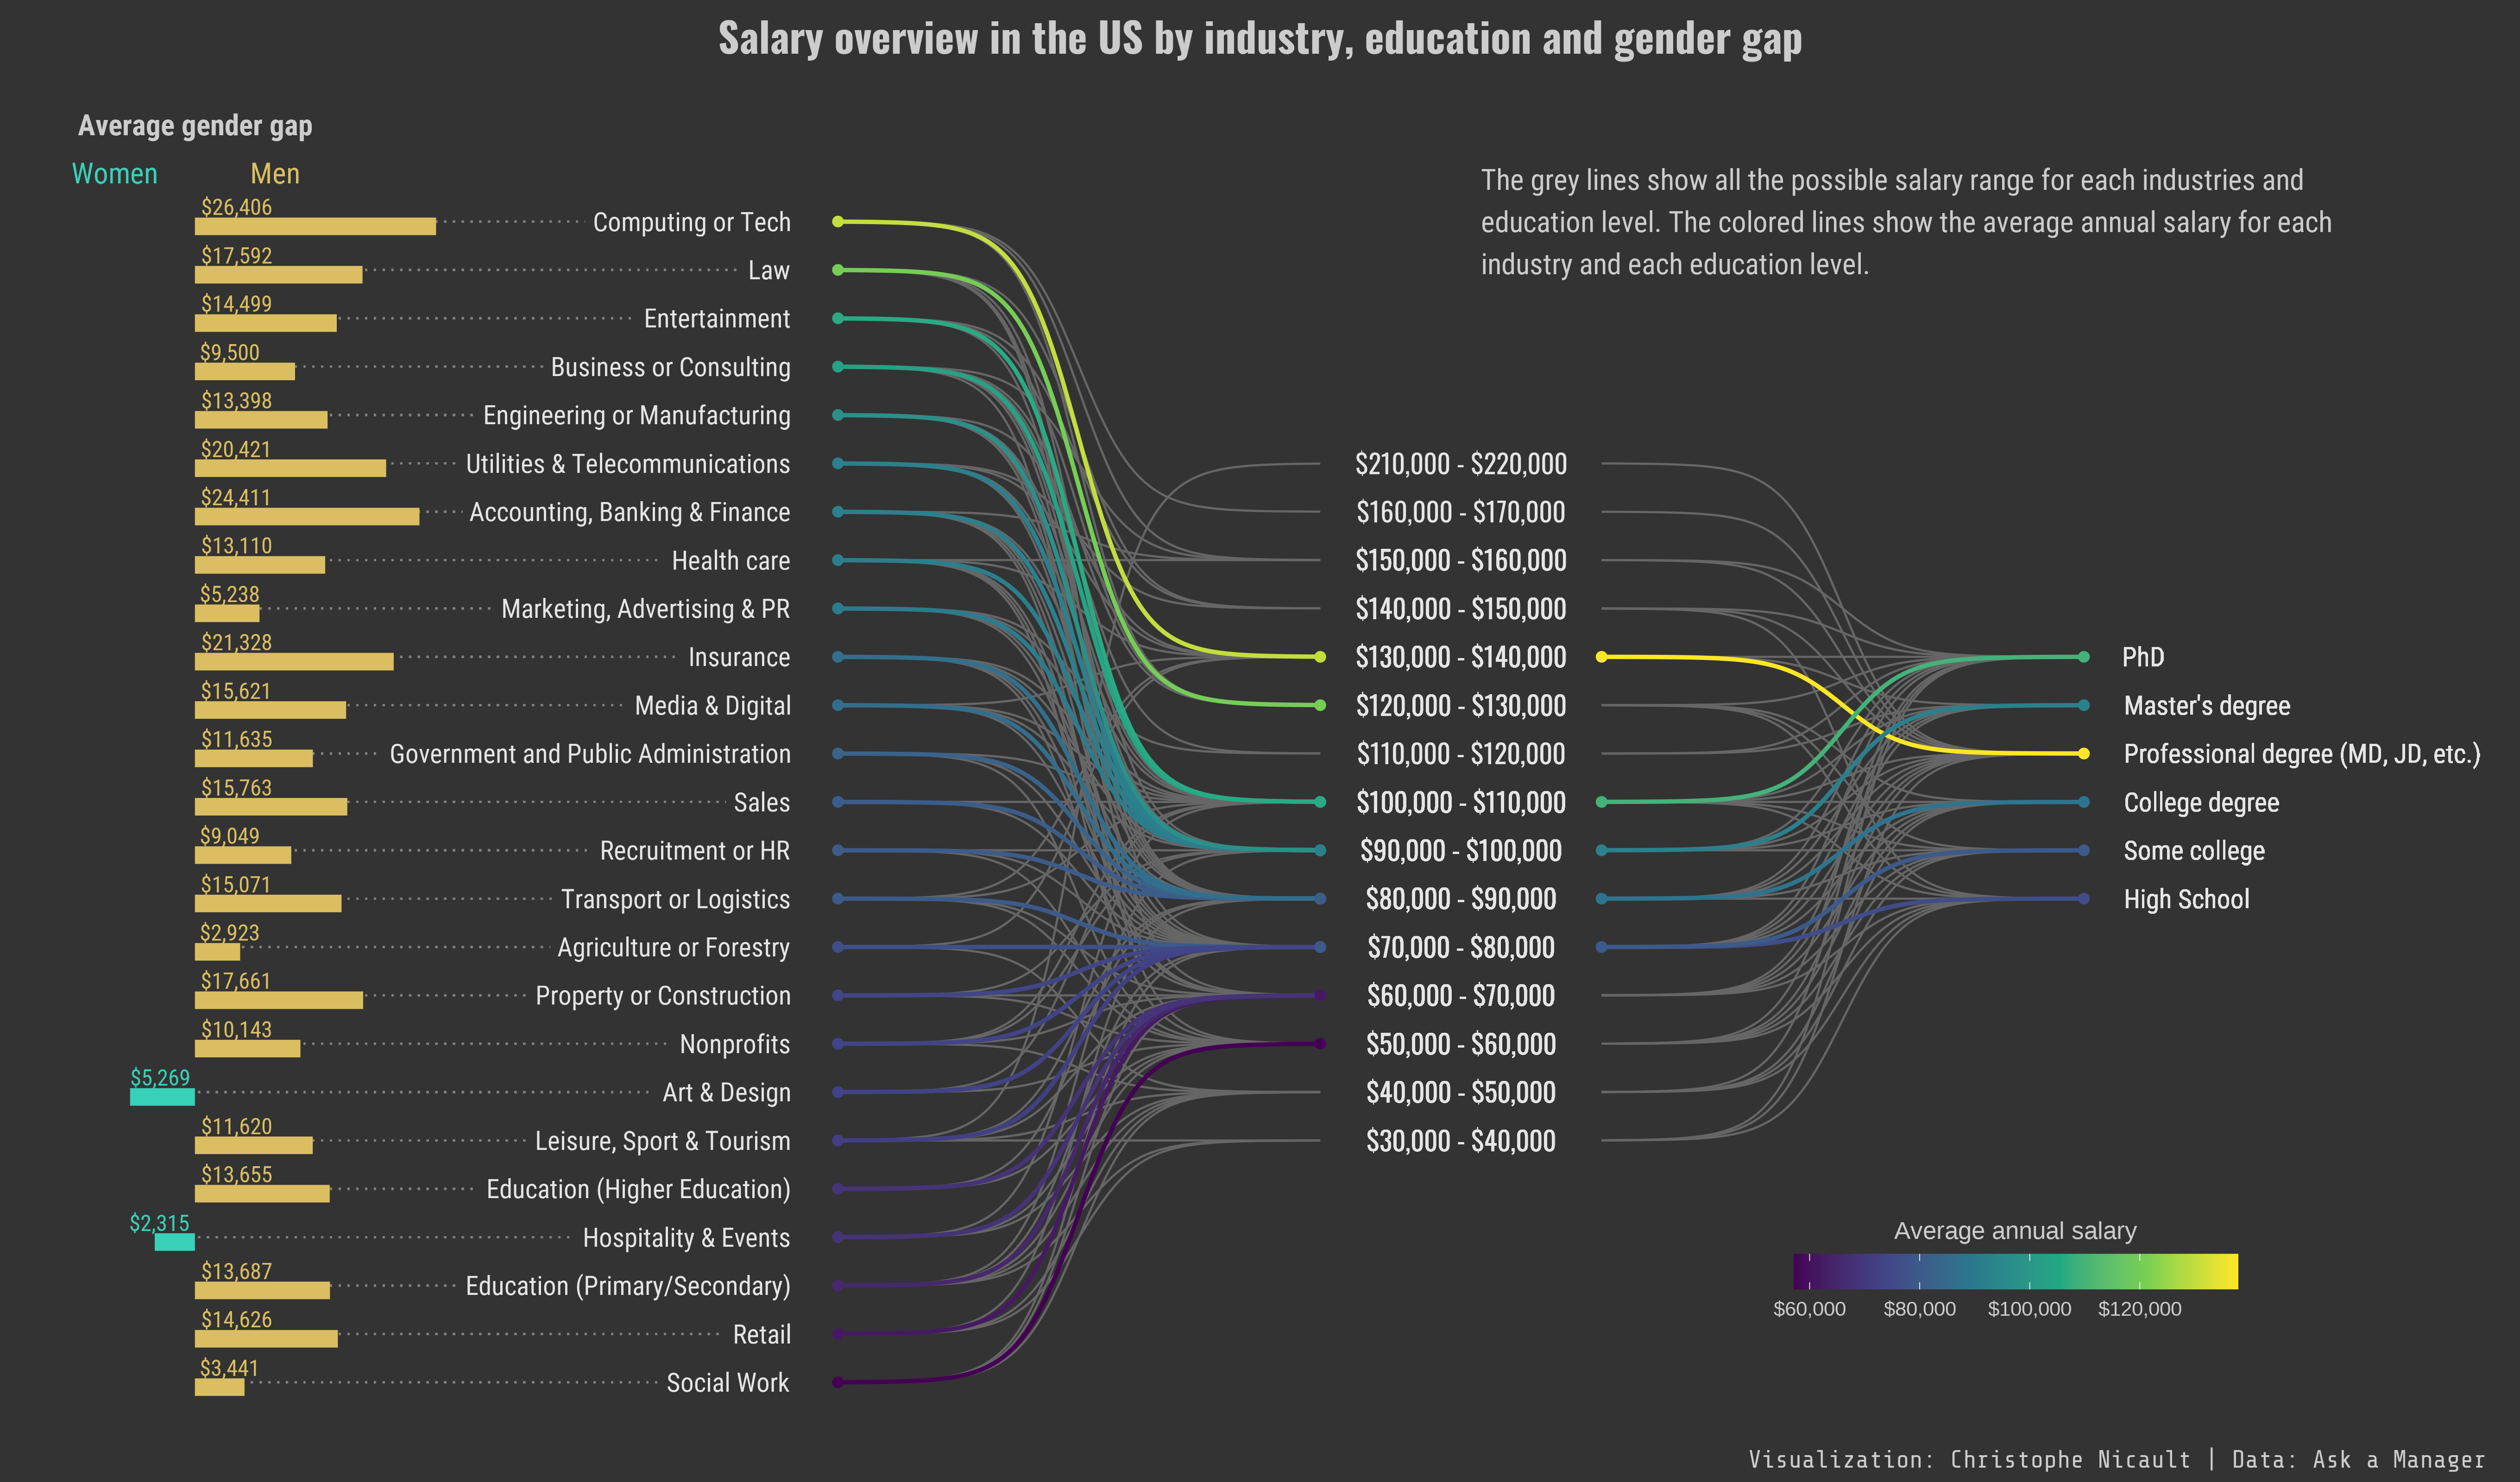 Aperçu des salaires aux États-Unis par secteur d’activité, éducation et écart entre les sexes